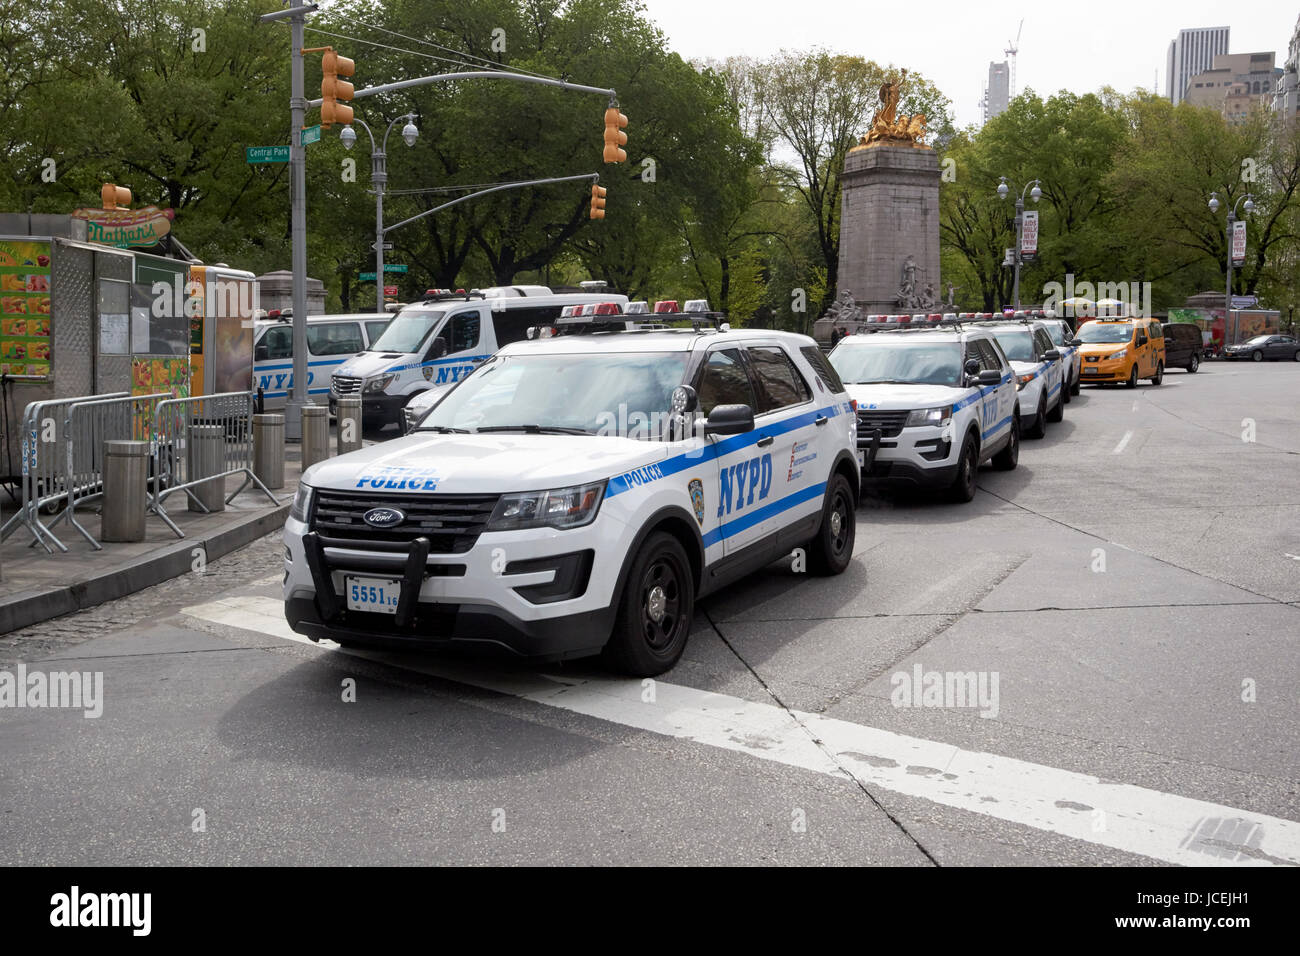 Nypd pattuglia di polizia veicoli parcheggiati a Columbus circle New York City USA Foto Stock